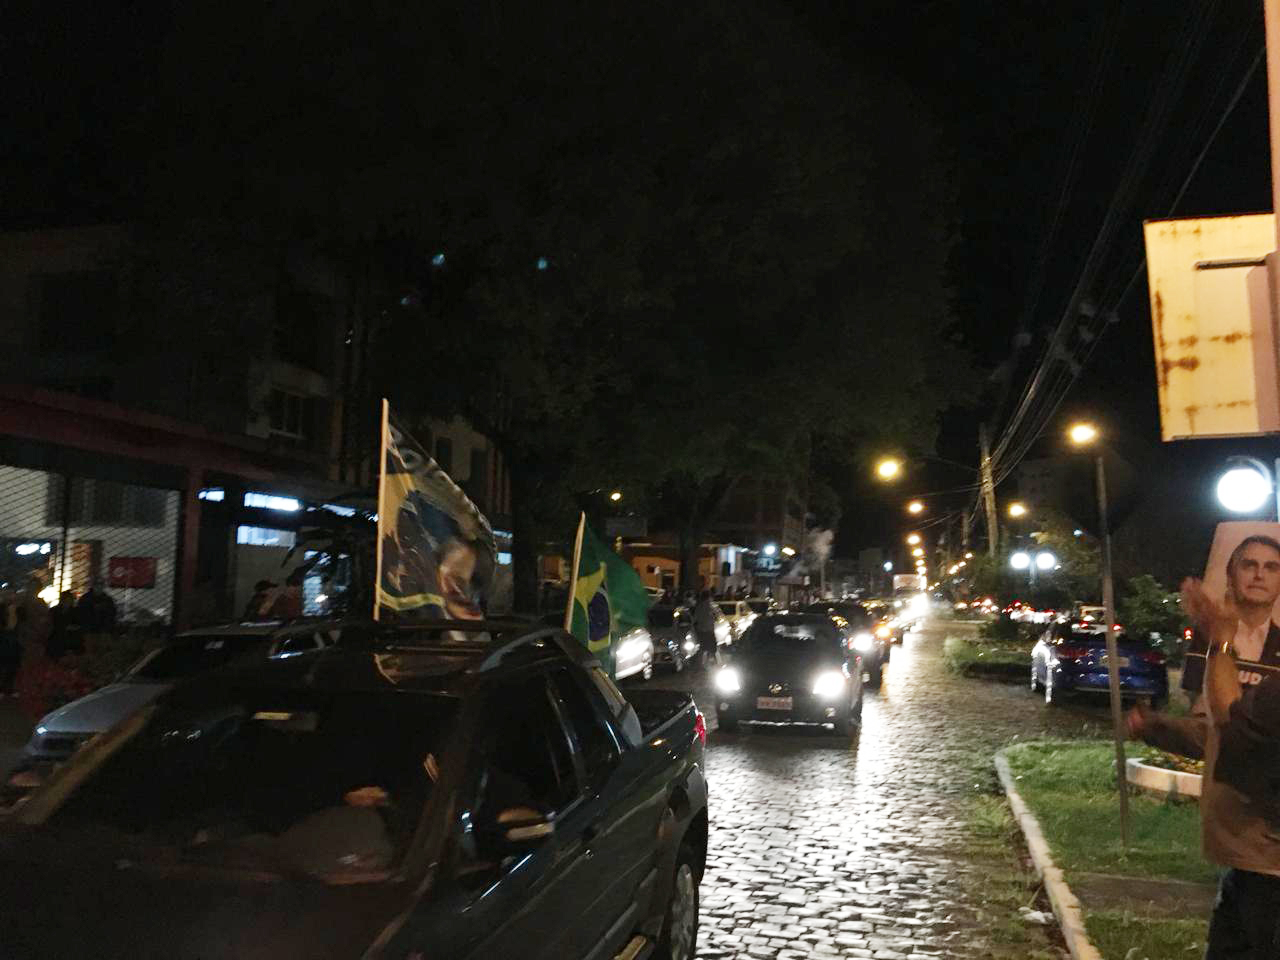 São-marquenses fizeram carreata em comemoração à vitória de Bolsonaro na noite deste domingo (28) (Foto: divulgação)